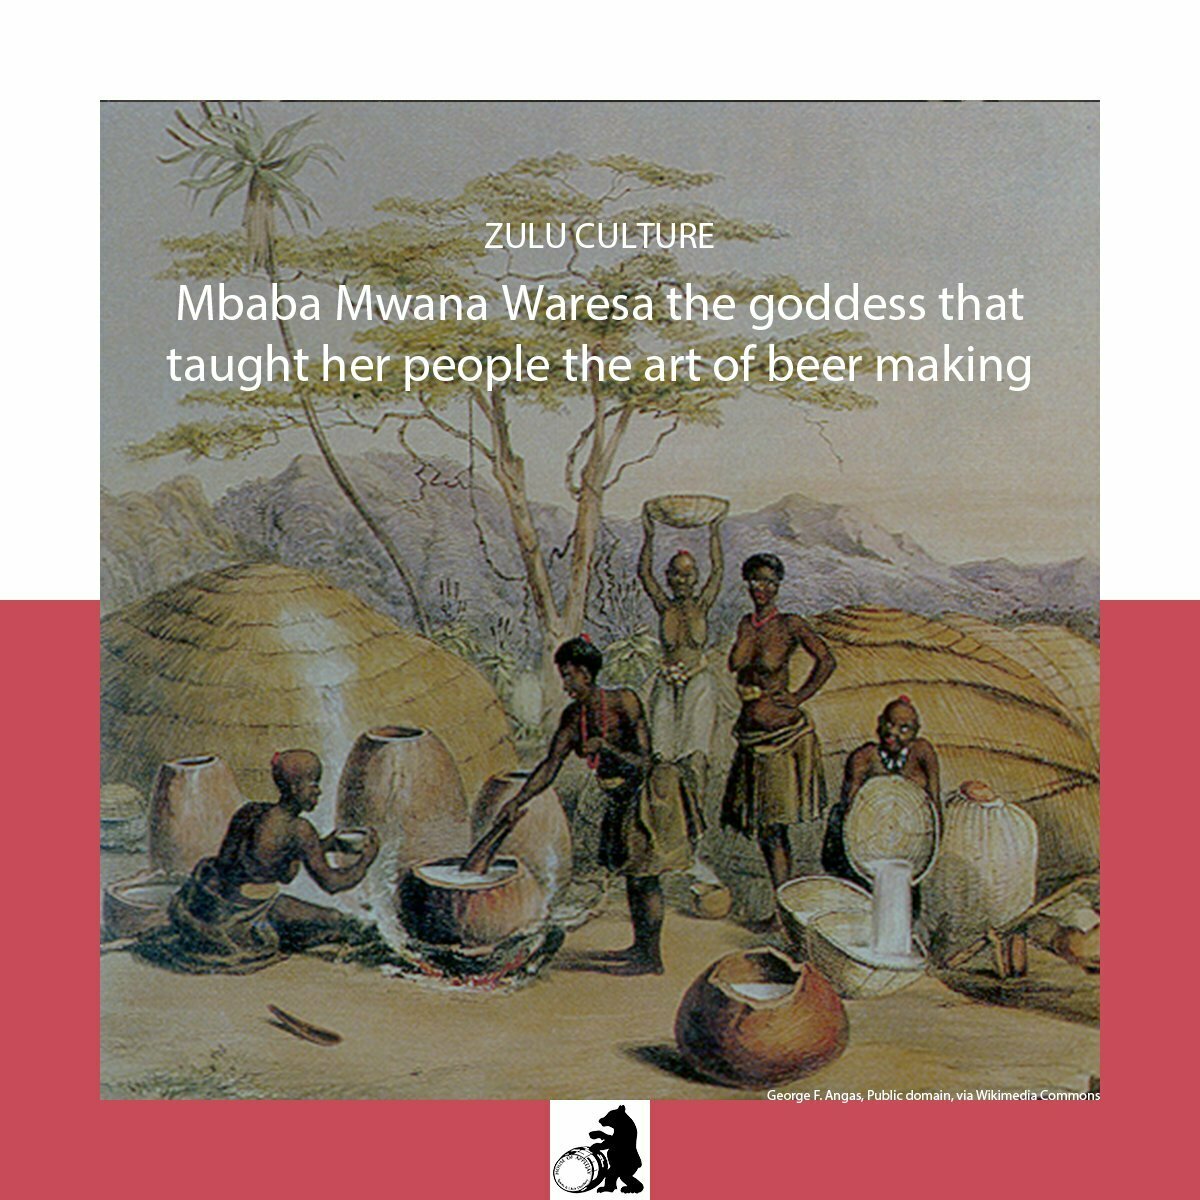 mbabaMwanaWares